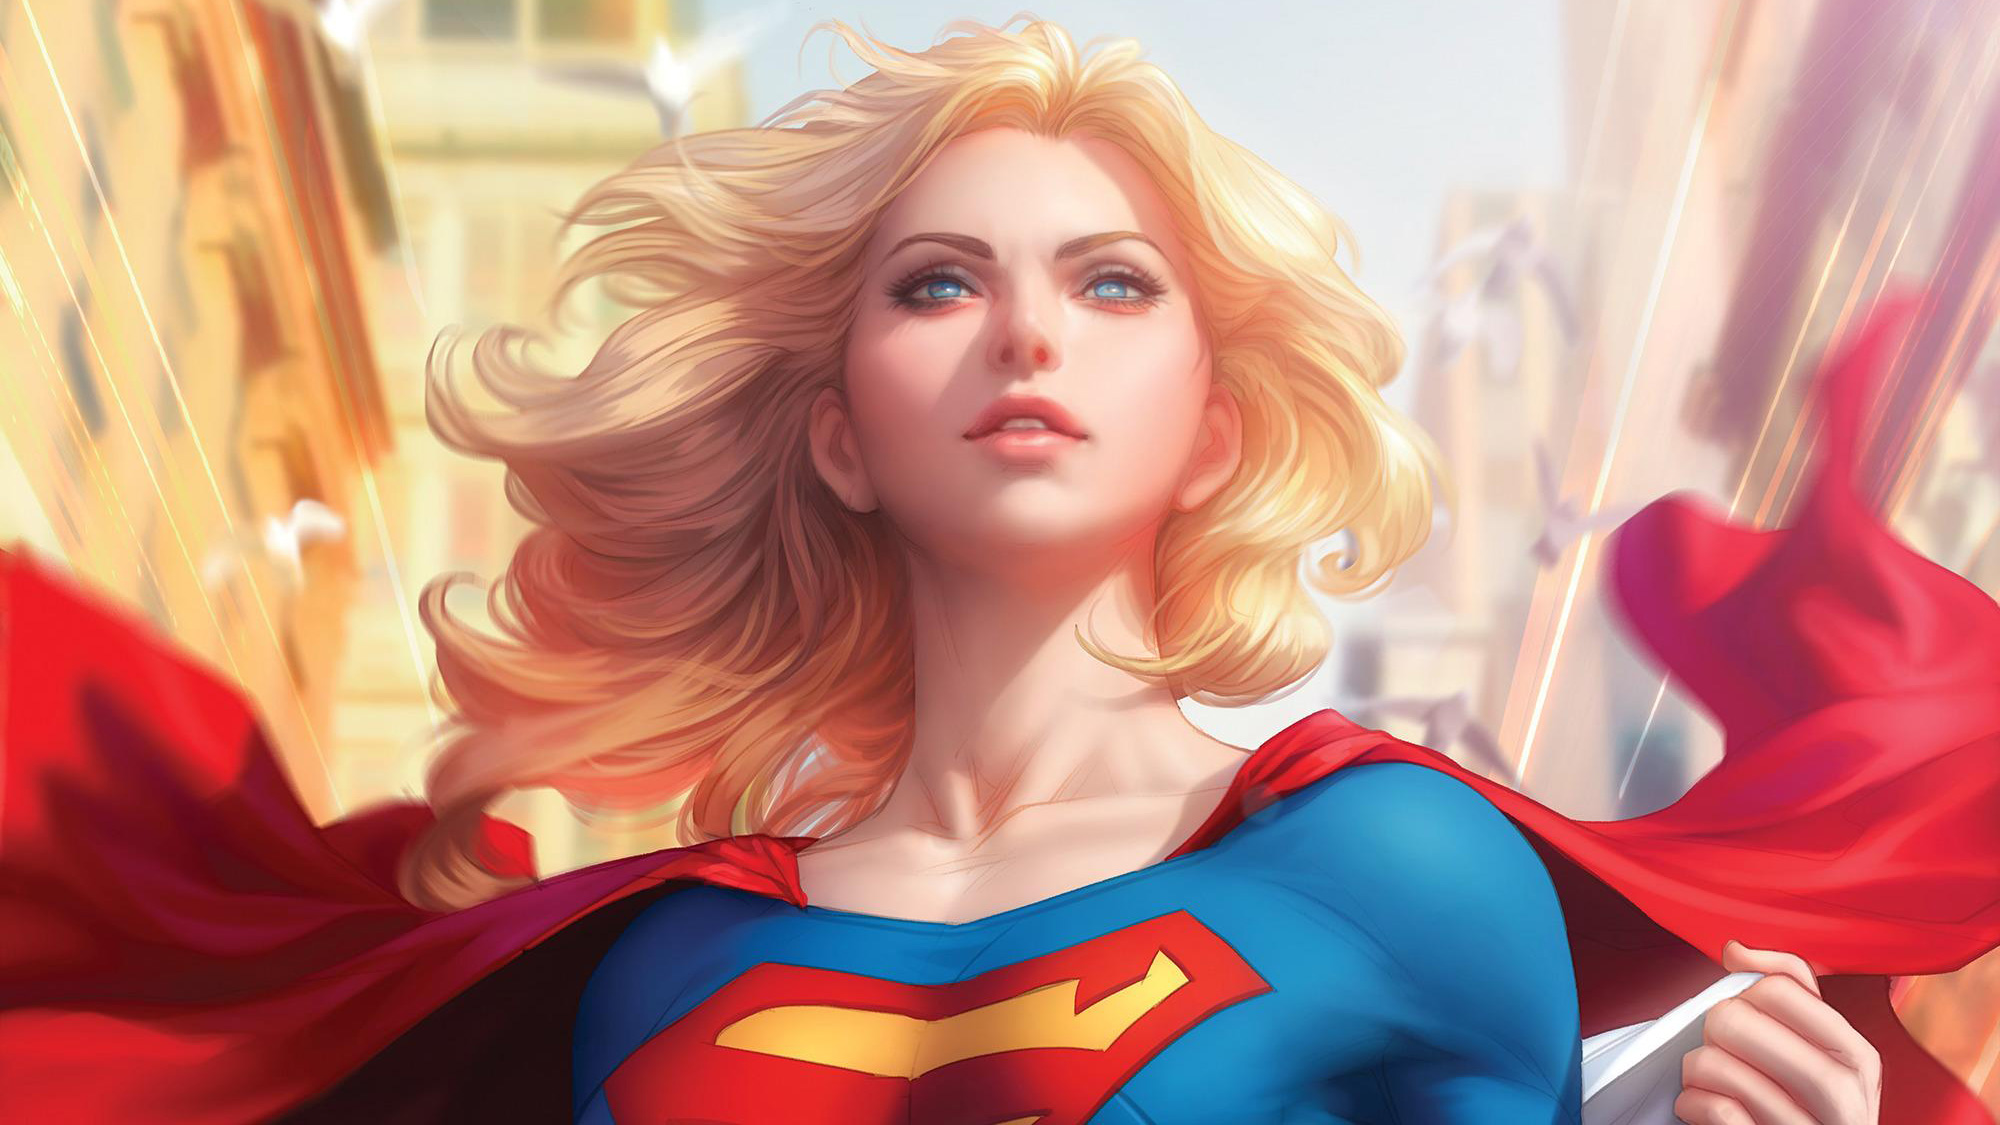 Supergirl Art , HD Wallpaper & Backgrounds